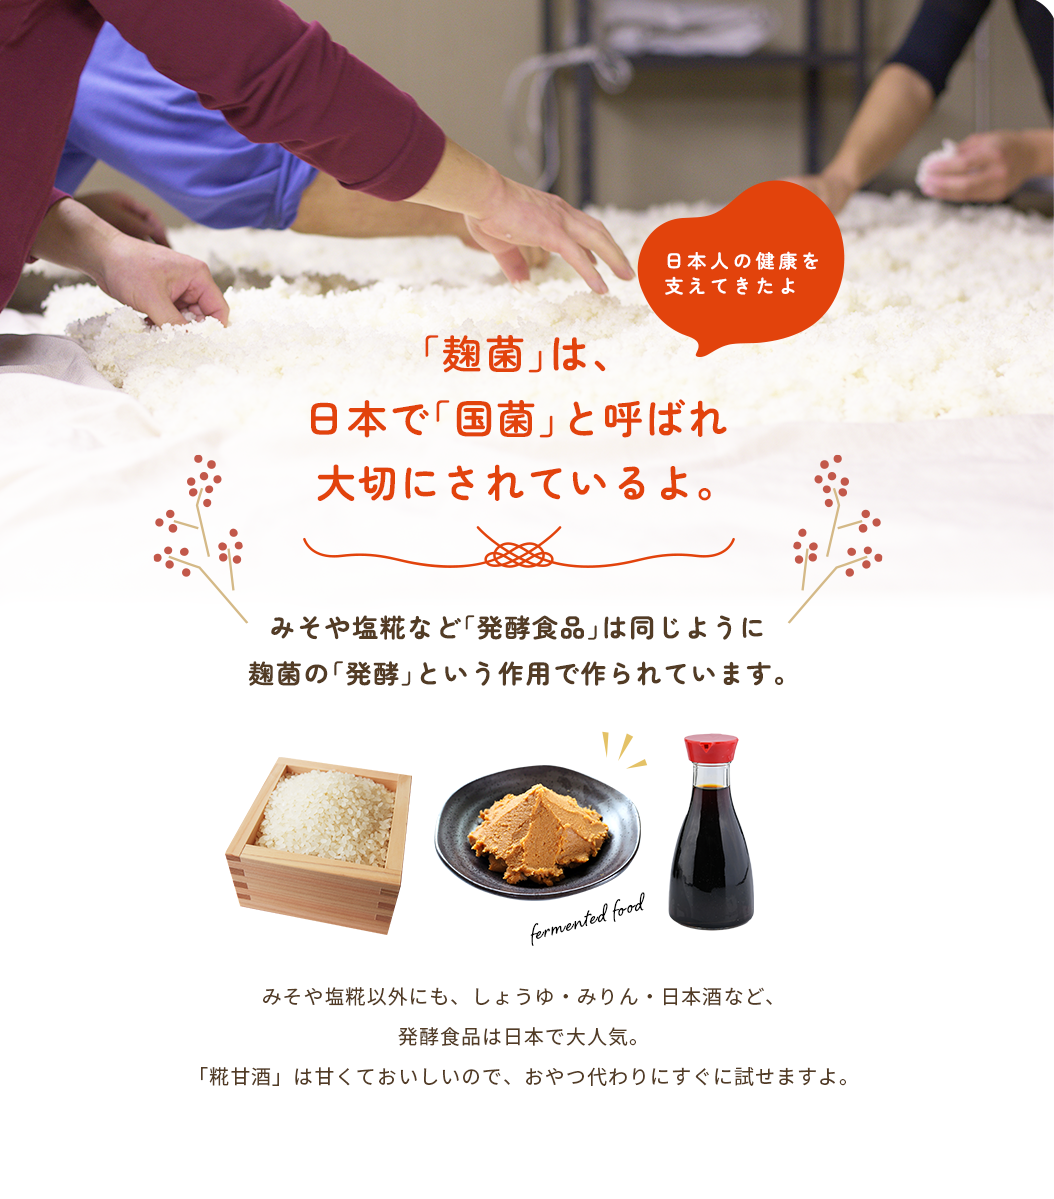 「麹菌」は、日本で「国菌」と呼ばれ大切にされているよ。